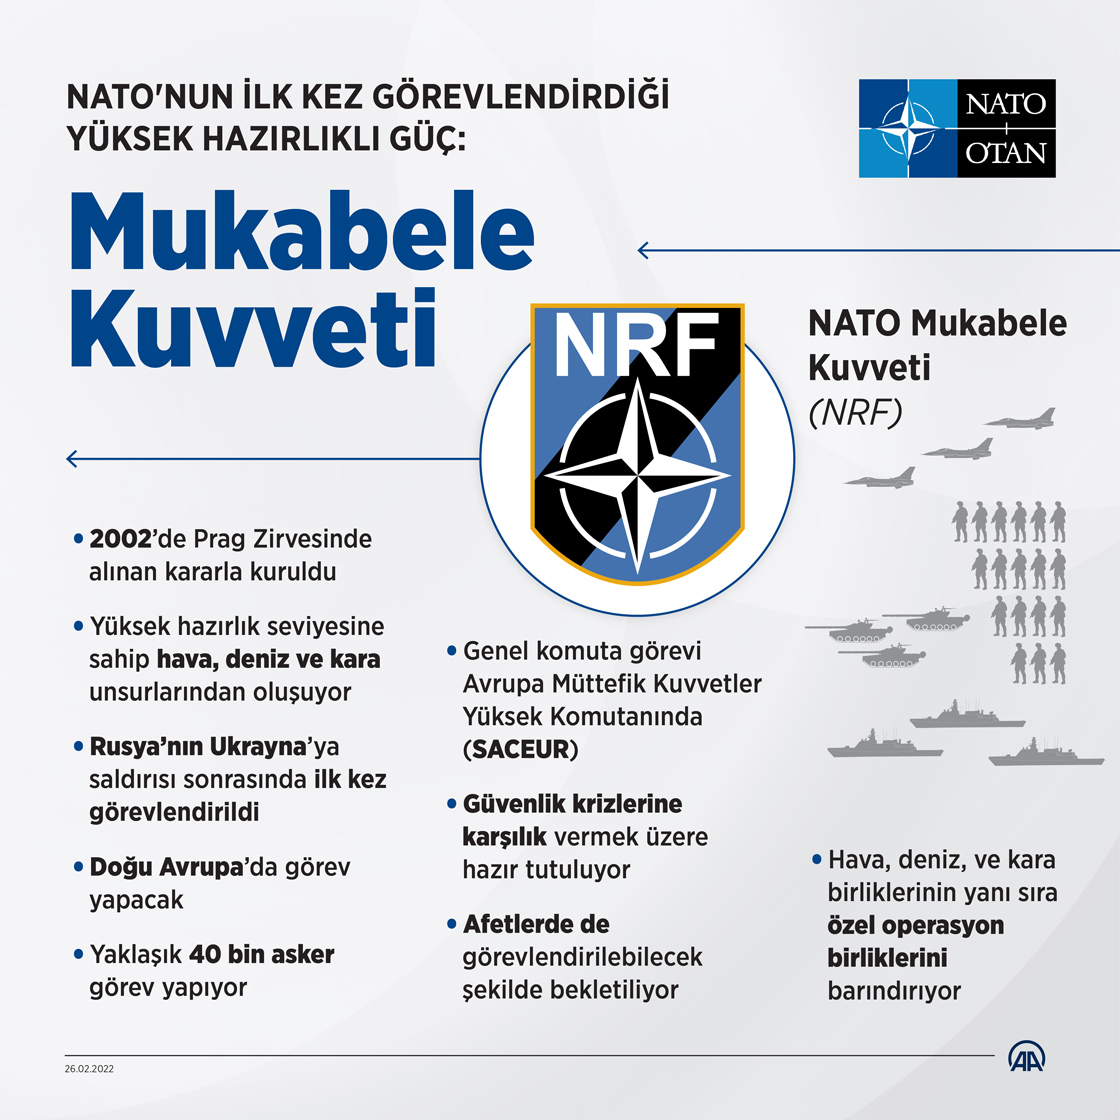 NATO'nun ilk kez görevlendirdiği yüksek hazırlıklı güç: Mukabele Kuvveti